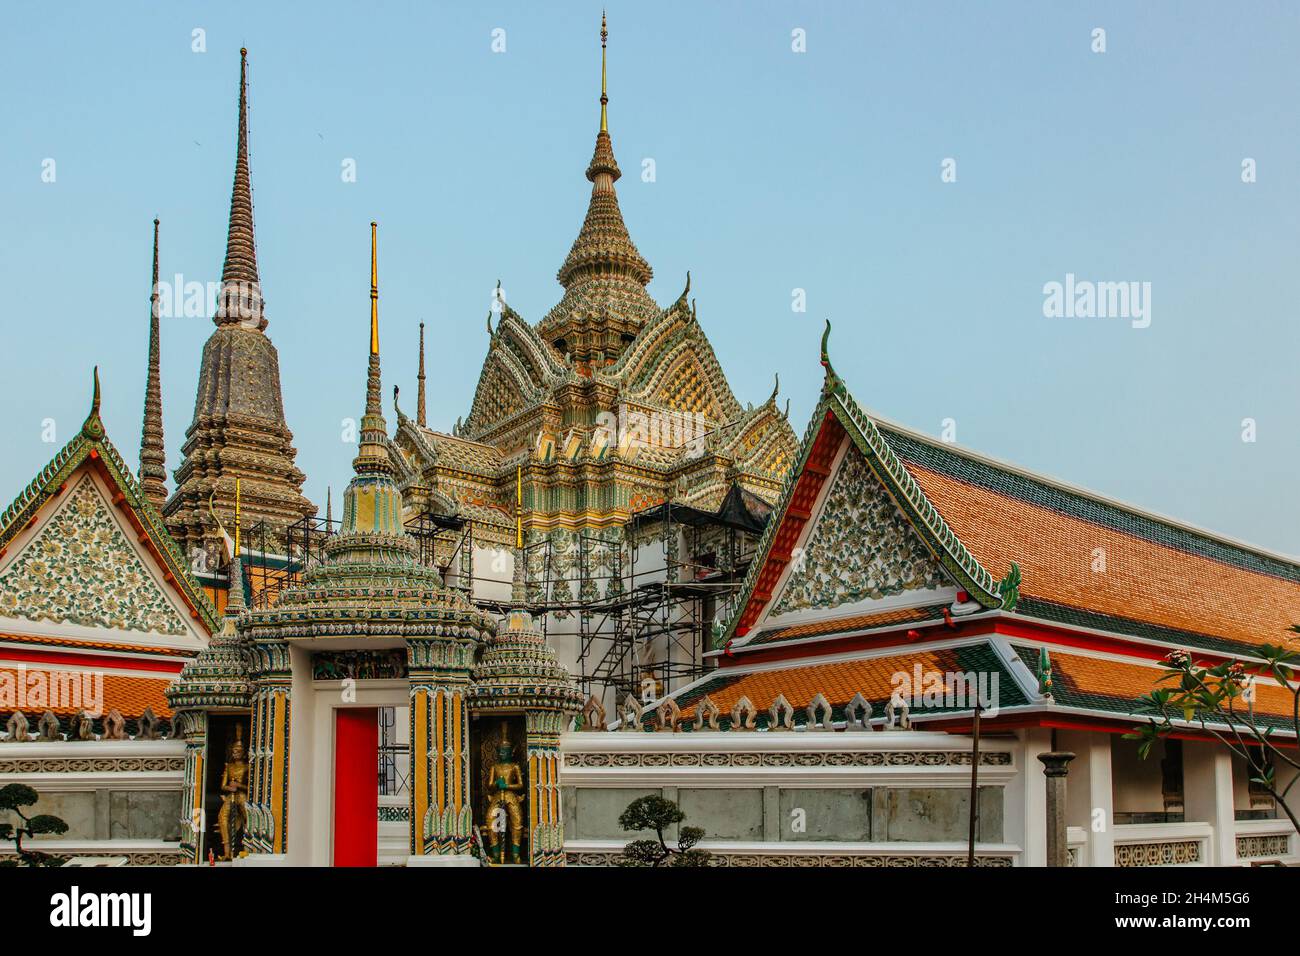 Bangkok, Thailand - Januar 17,2020. Wat Pho, alter buddhistischer Tempelkomplex mit liegender Buddha. Beliebte Touristenattraktion enthält mehrere Hallen, col Stockfoto